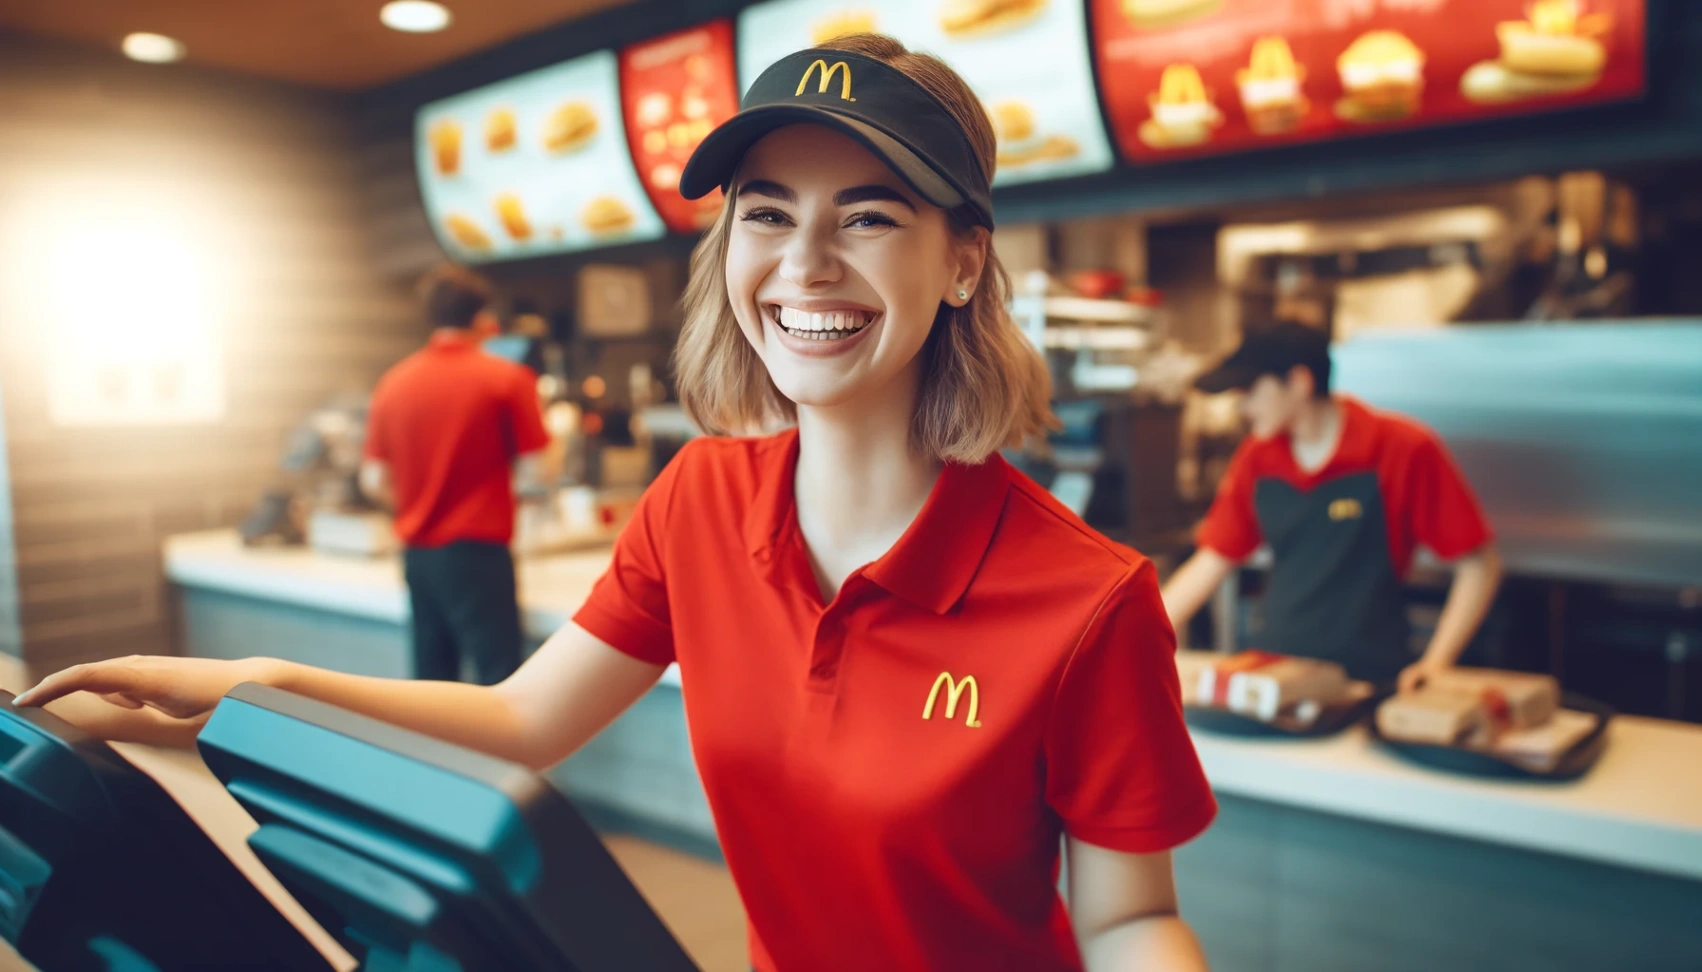 McDonald's Darba Pieteikums: Tavs ceļš uz aizraujošām iespējām